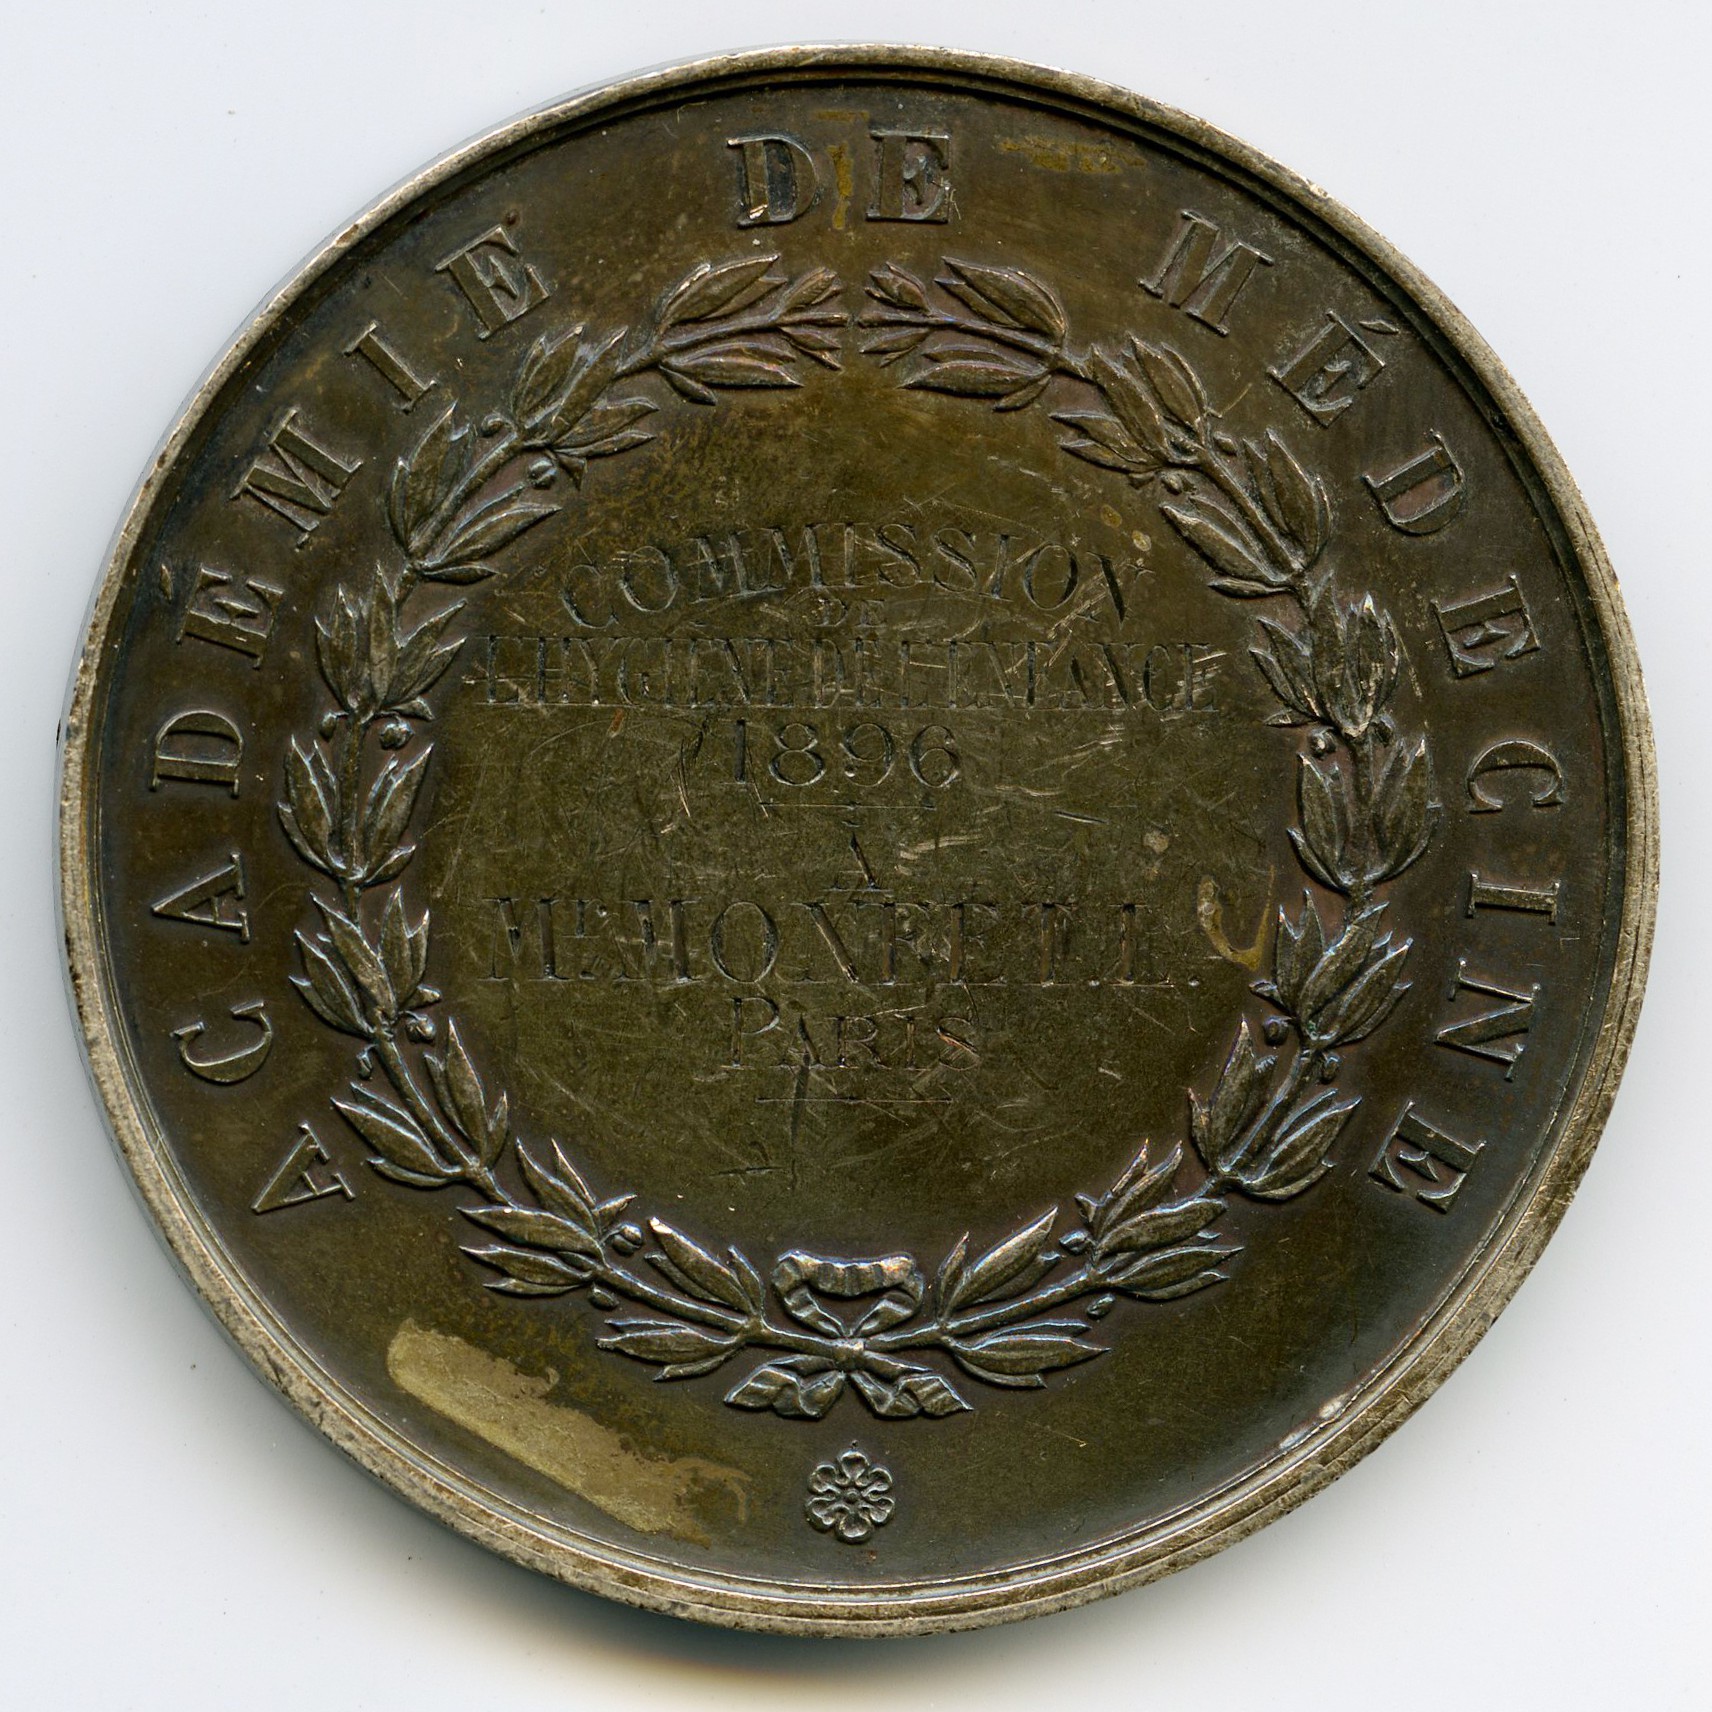 Academie de Médecine - Médaille - 1896 revers